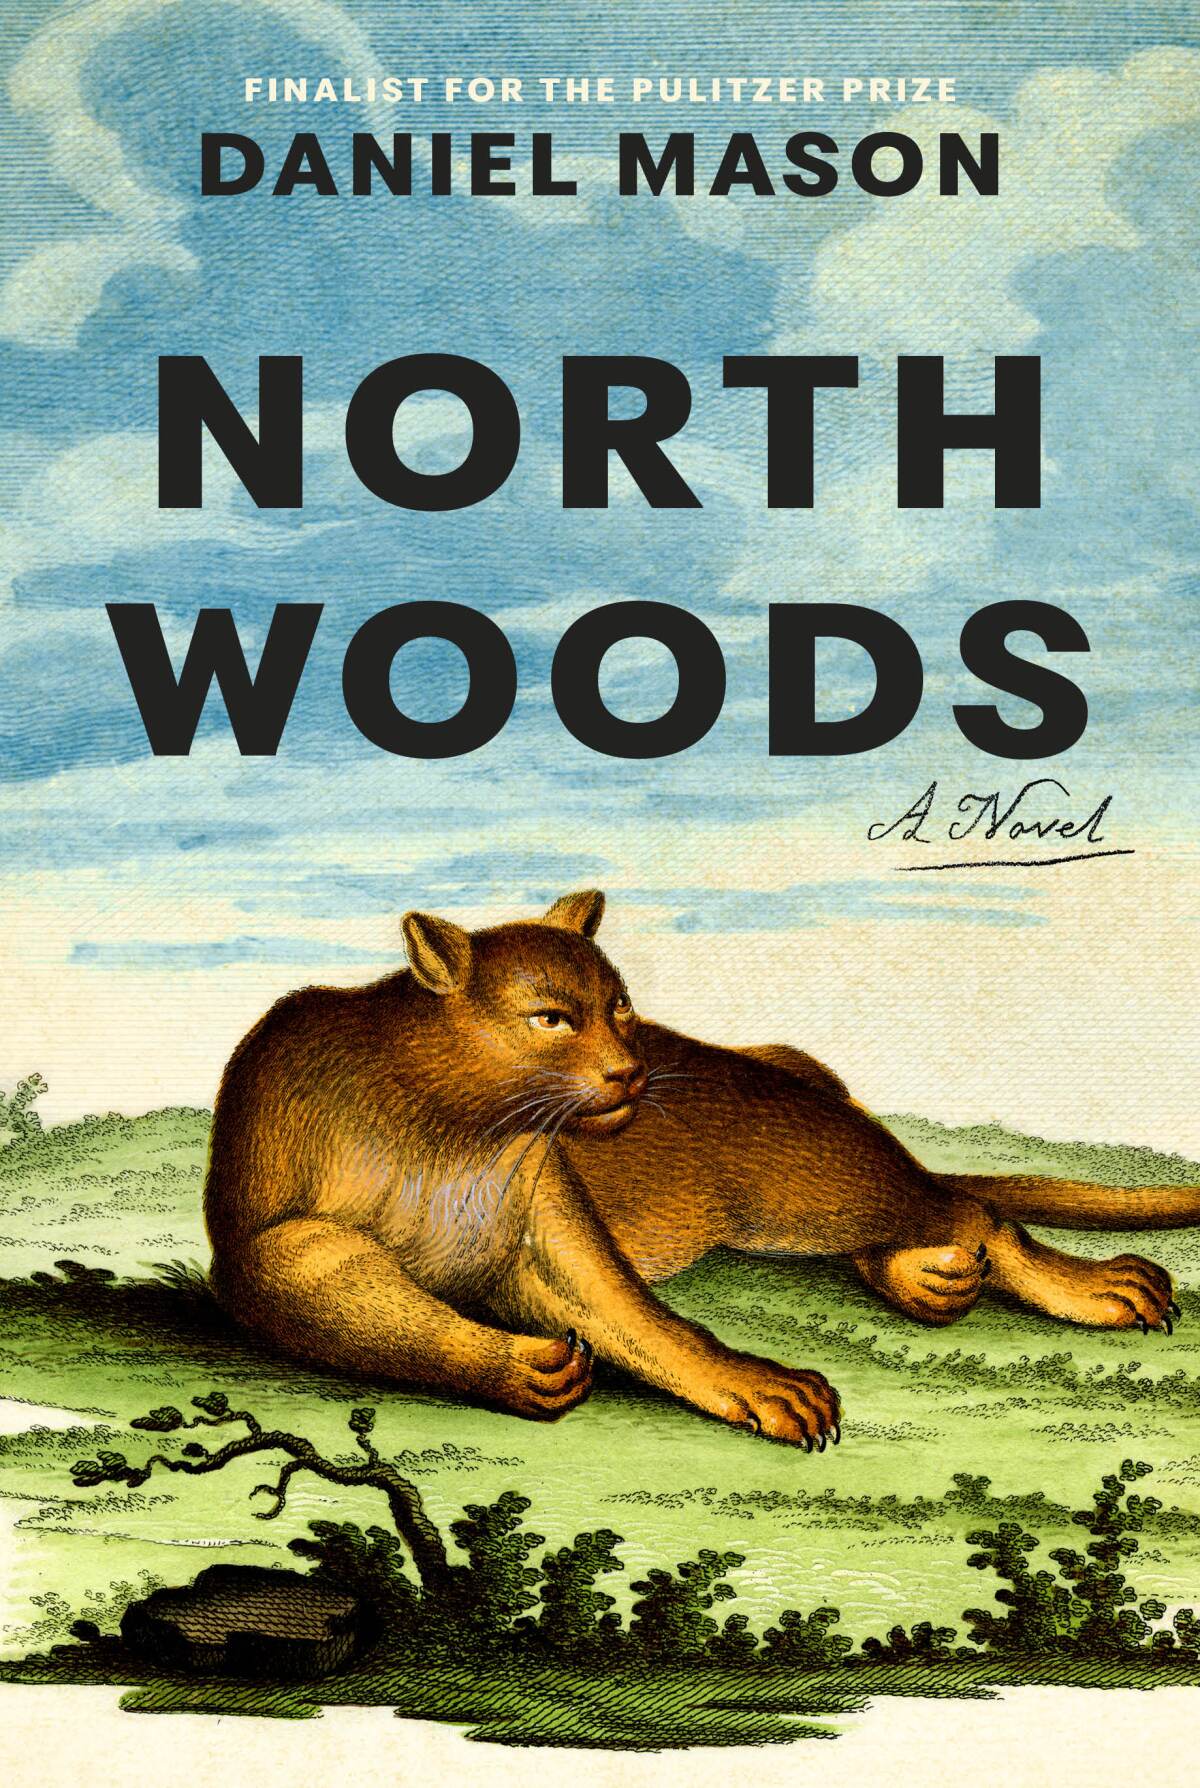 "North Woods," by Daniel Mason